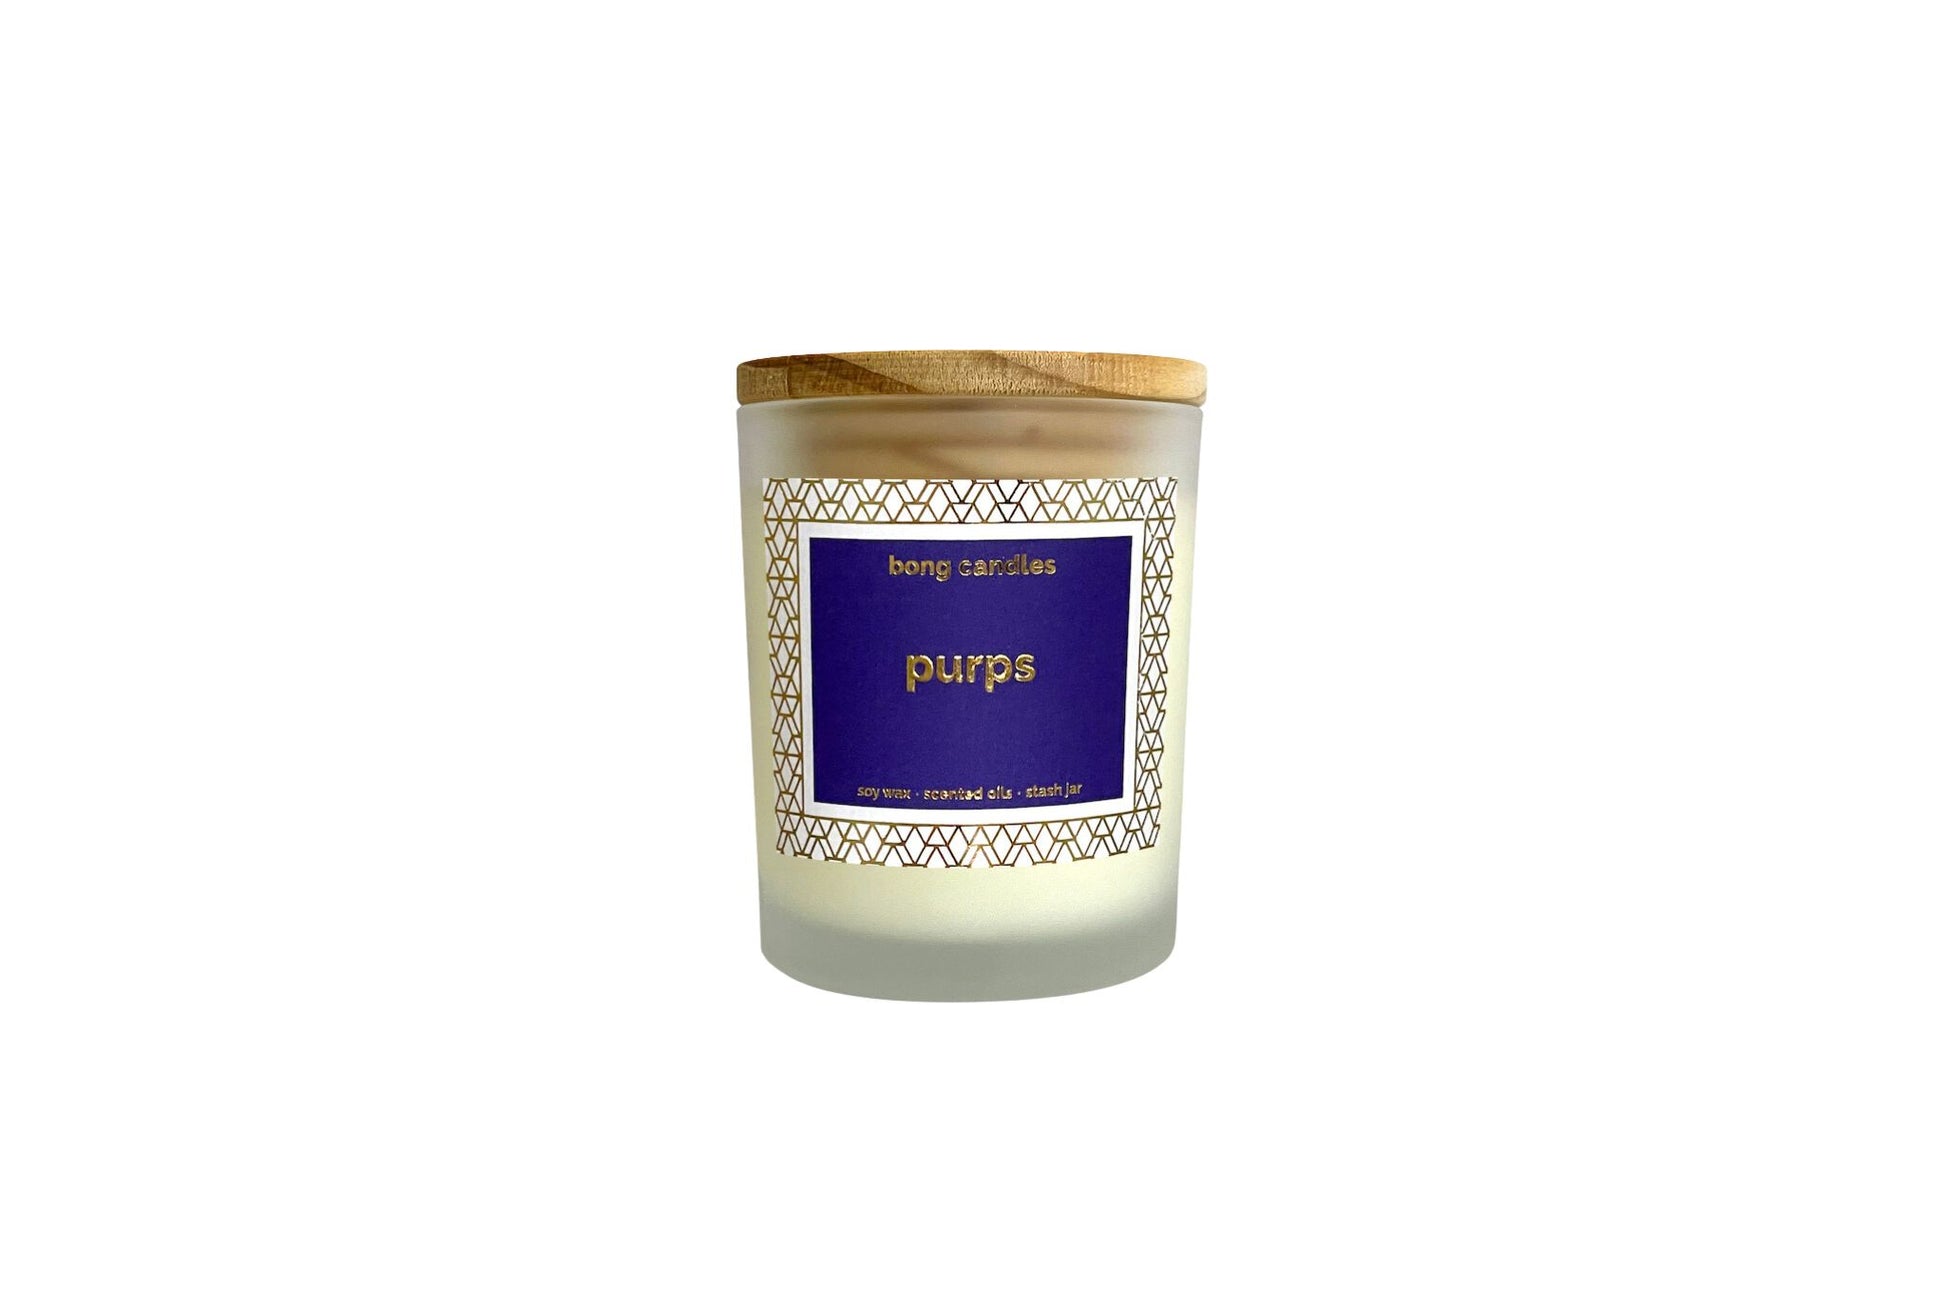 purps stash jar candle, juicy blackberry, lemon & lime, purps, airtight lid, stash jar